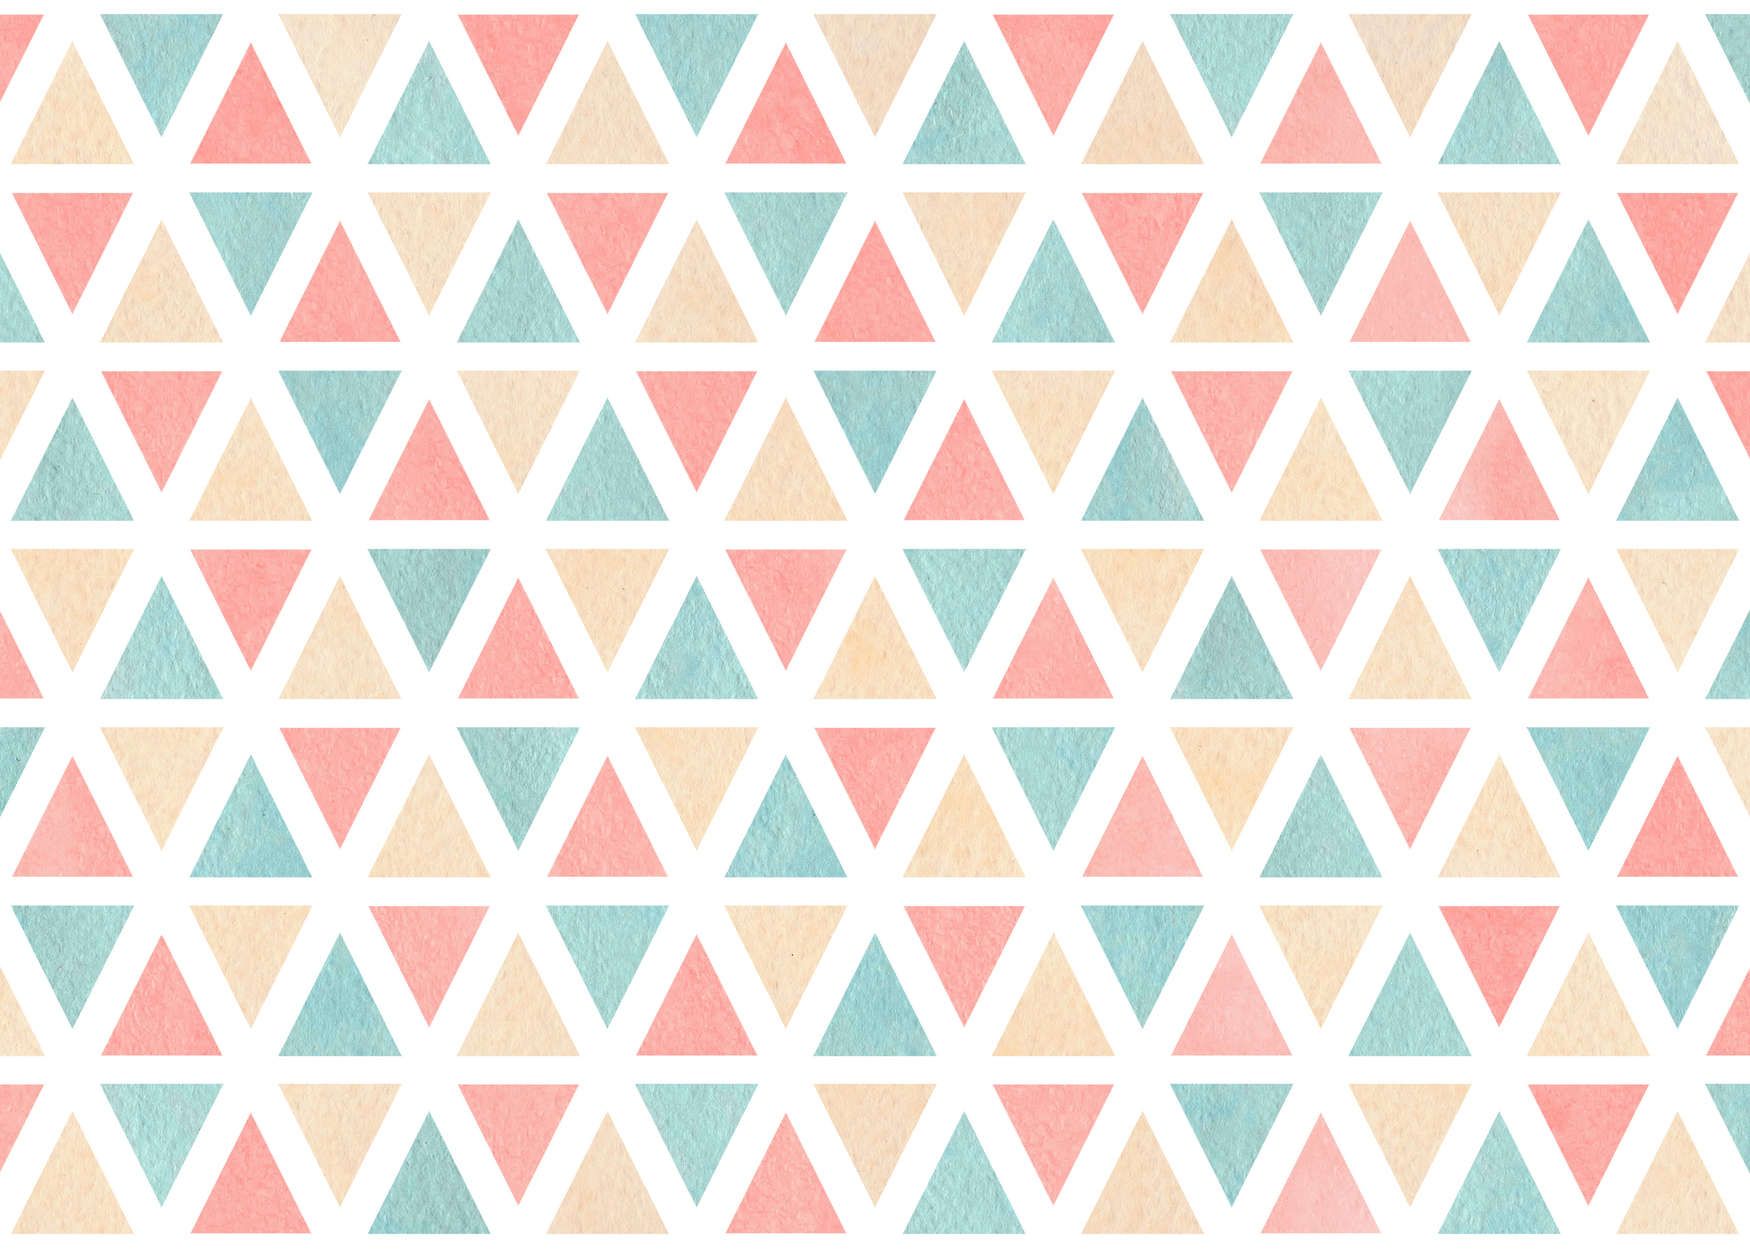             Digital behang grafisch patroon met kleurrijke driehoeken - Glad & licht glanzend vlies
        